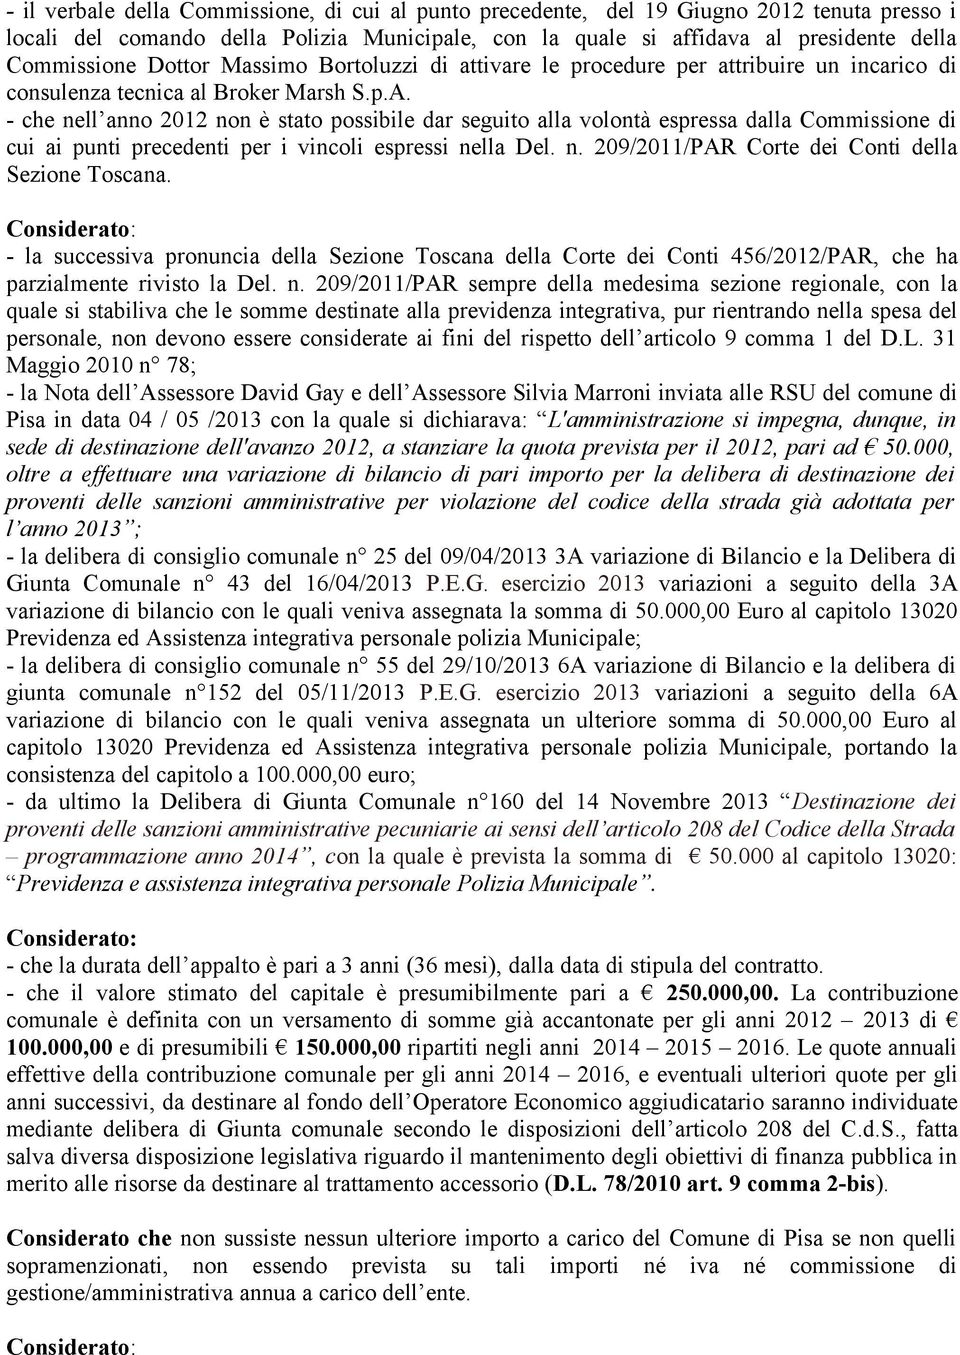 - che nell anno 2012 non è stato possibile dar seguito alla volontà espressa dalla Commissione di cui ai punti precedenti per i vincoli espressi nella Del. n. 209/2011/PAR Corte dei Conti della Sezione Toscana.